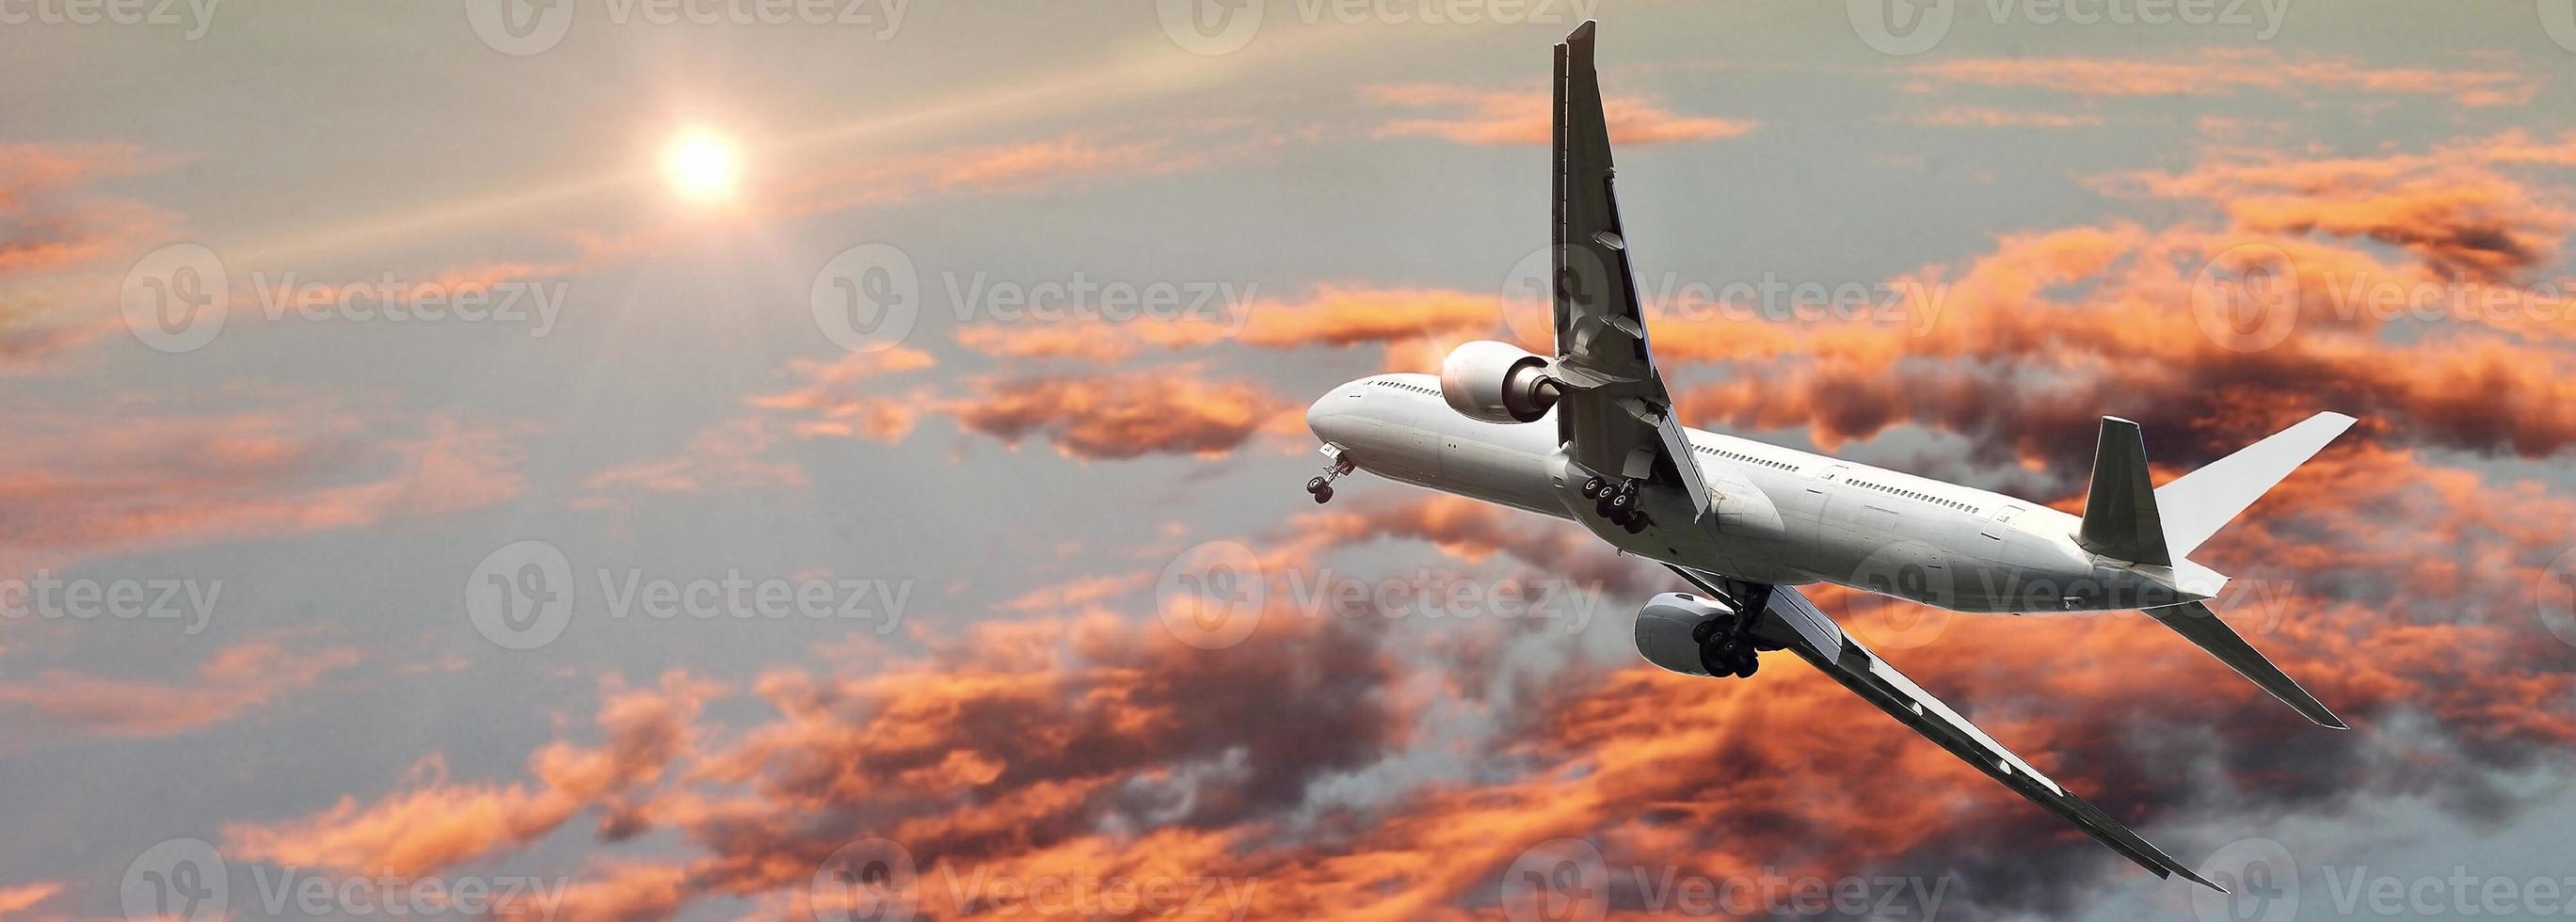 Verkehrsflugzeug im Flug gegen bunten Himmel foto